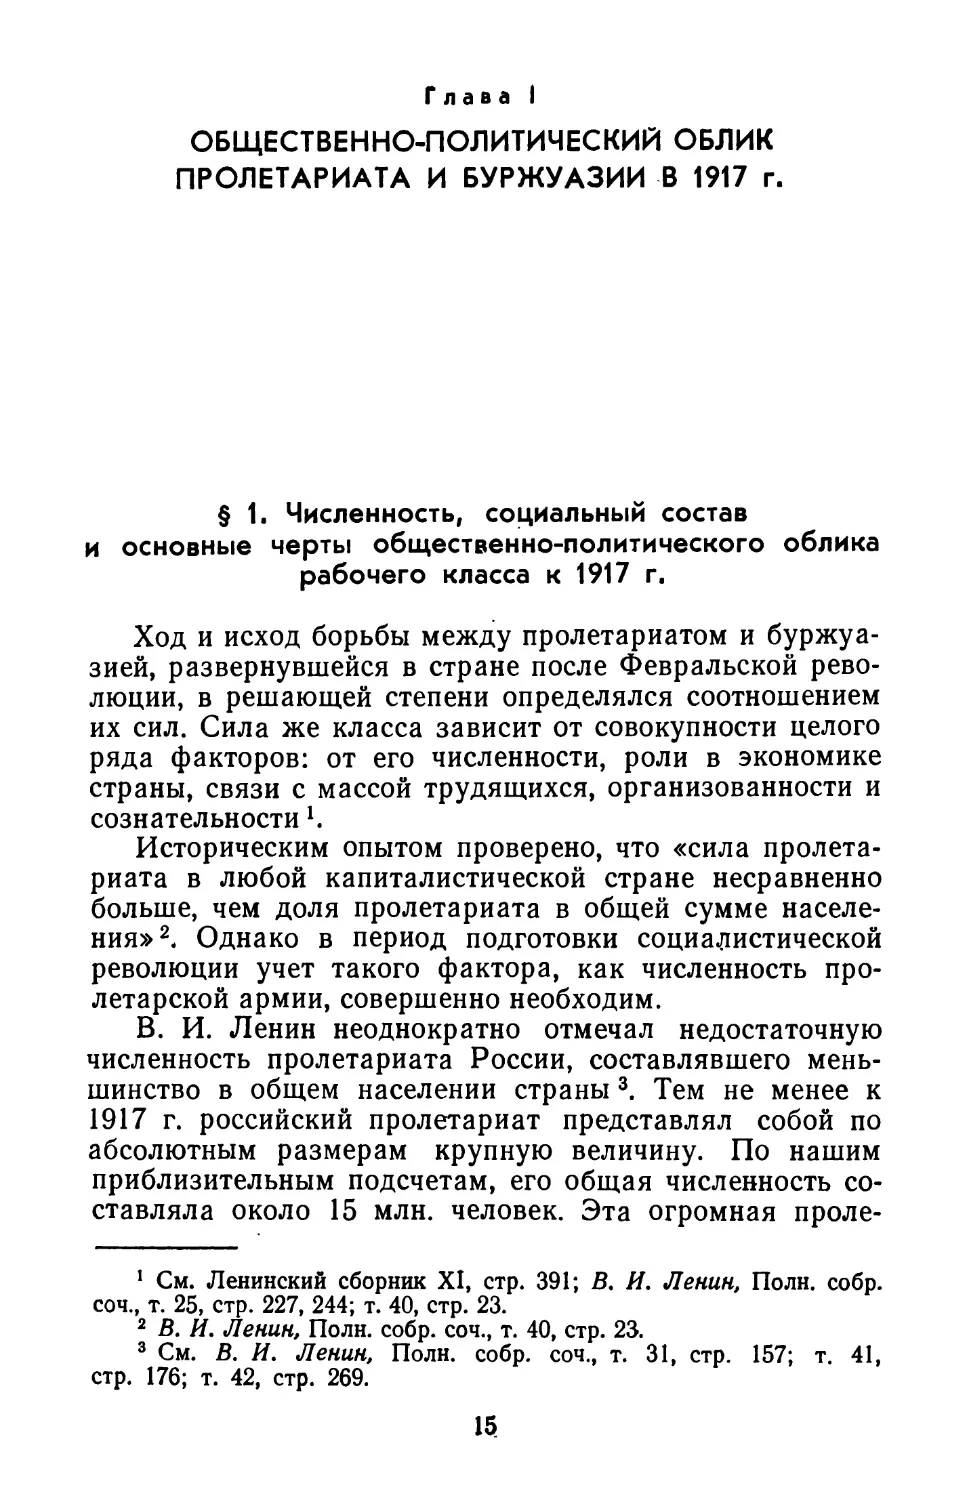 Глава  I.  Общественно-политический  облик  пролетариата  и  буржуазии  в  1917  г